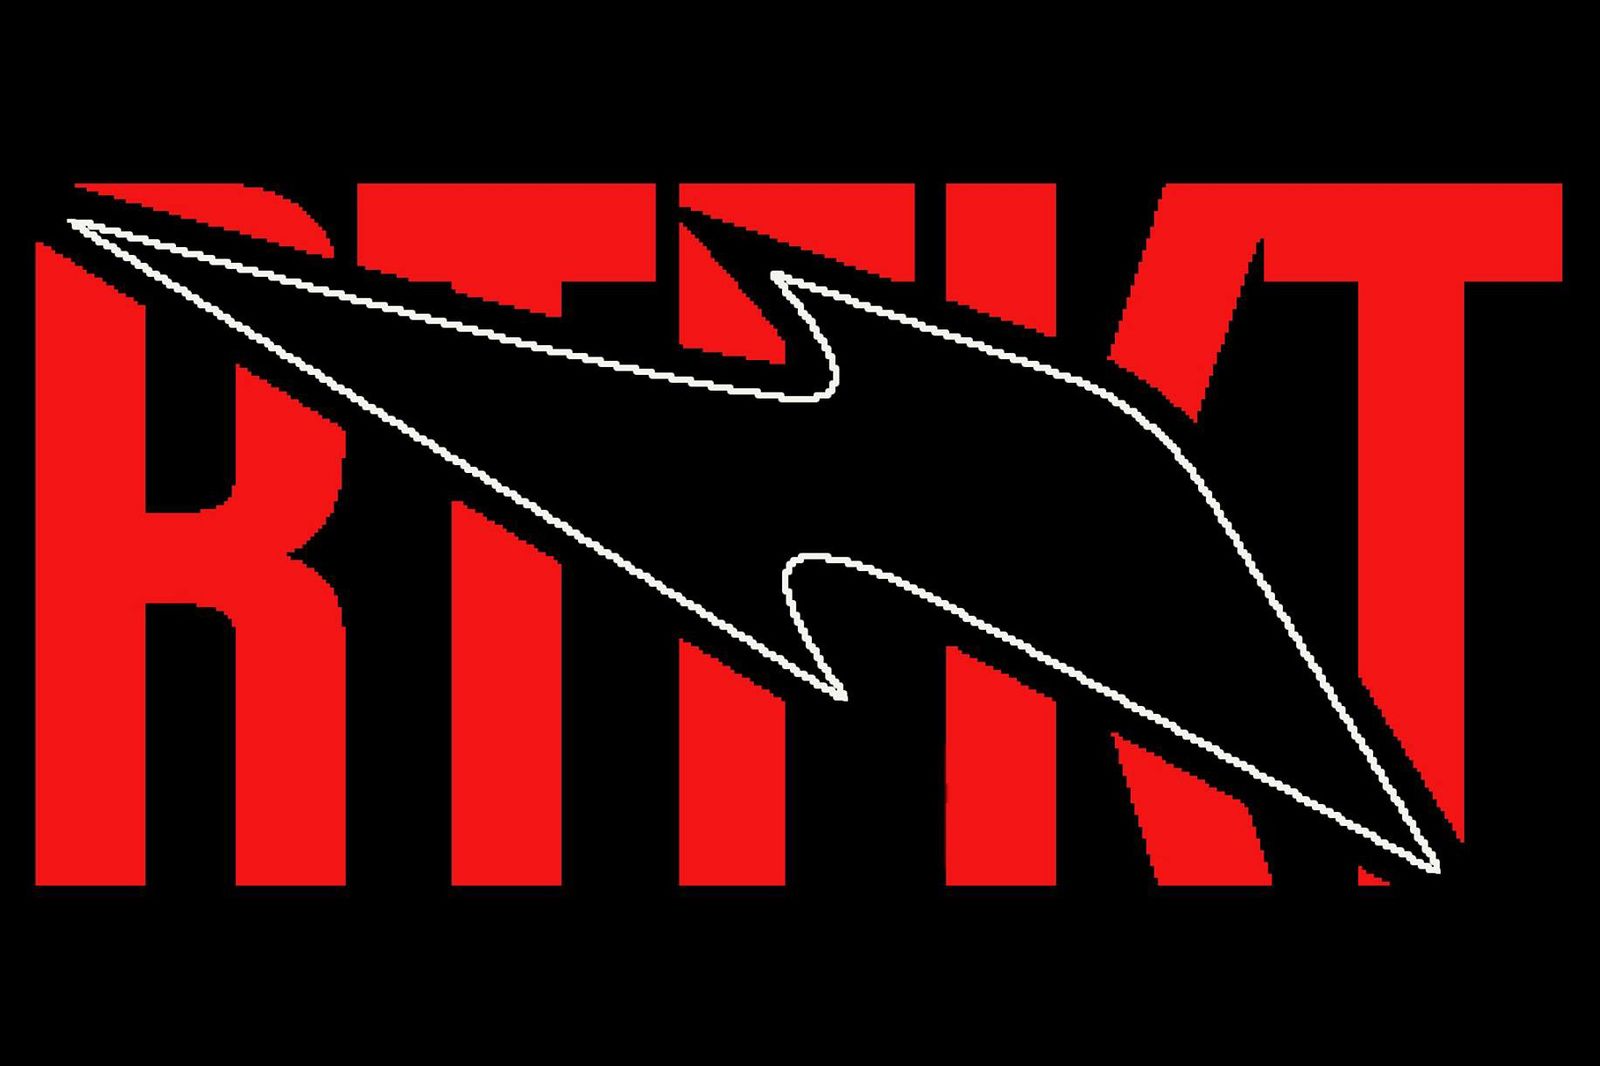 Red logo saying RTFKT